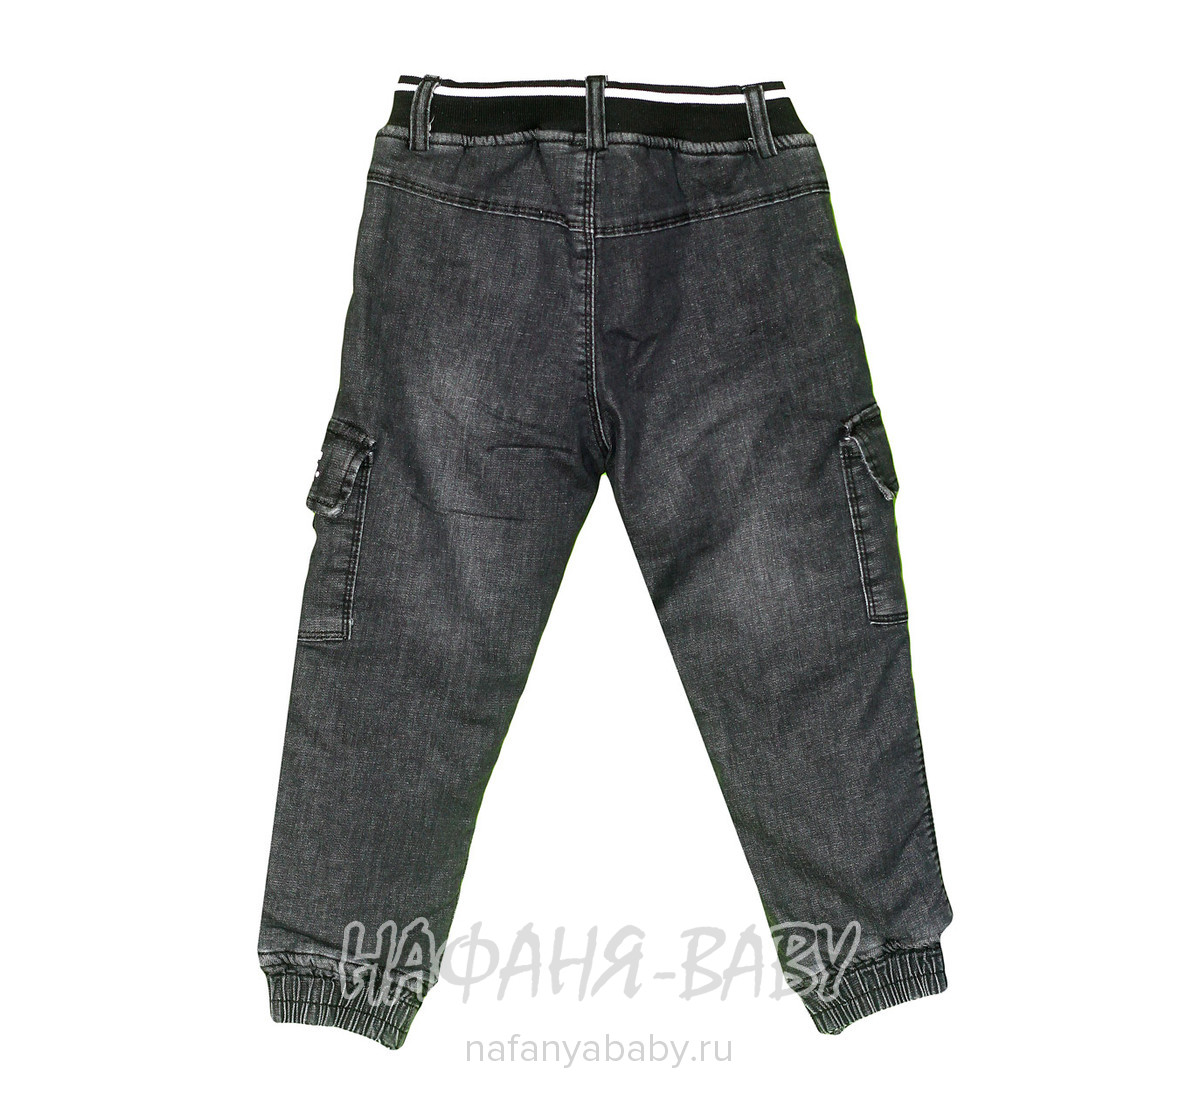 Зимние джинсы-джоггеры RIDAYEN, купить в интернет магазине Нафаня. арт: 1409.